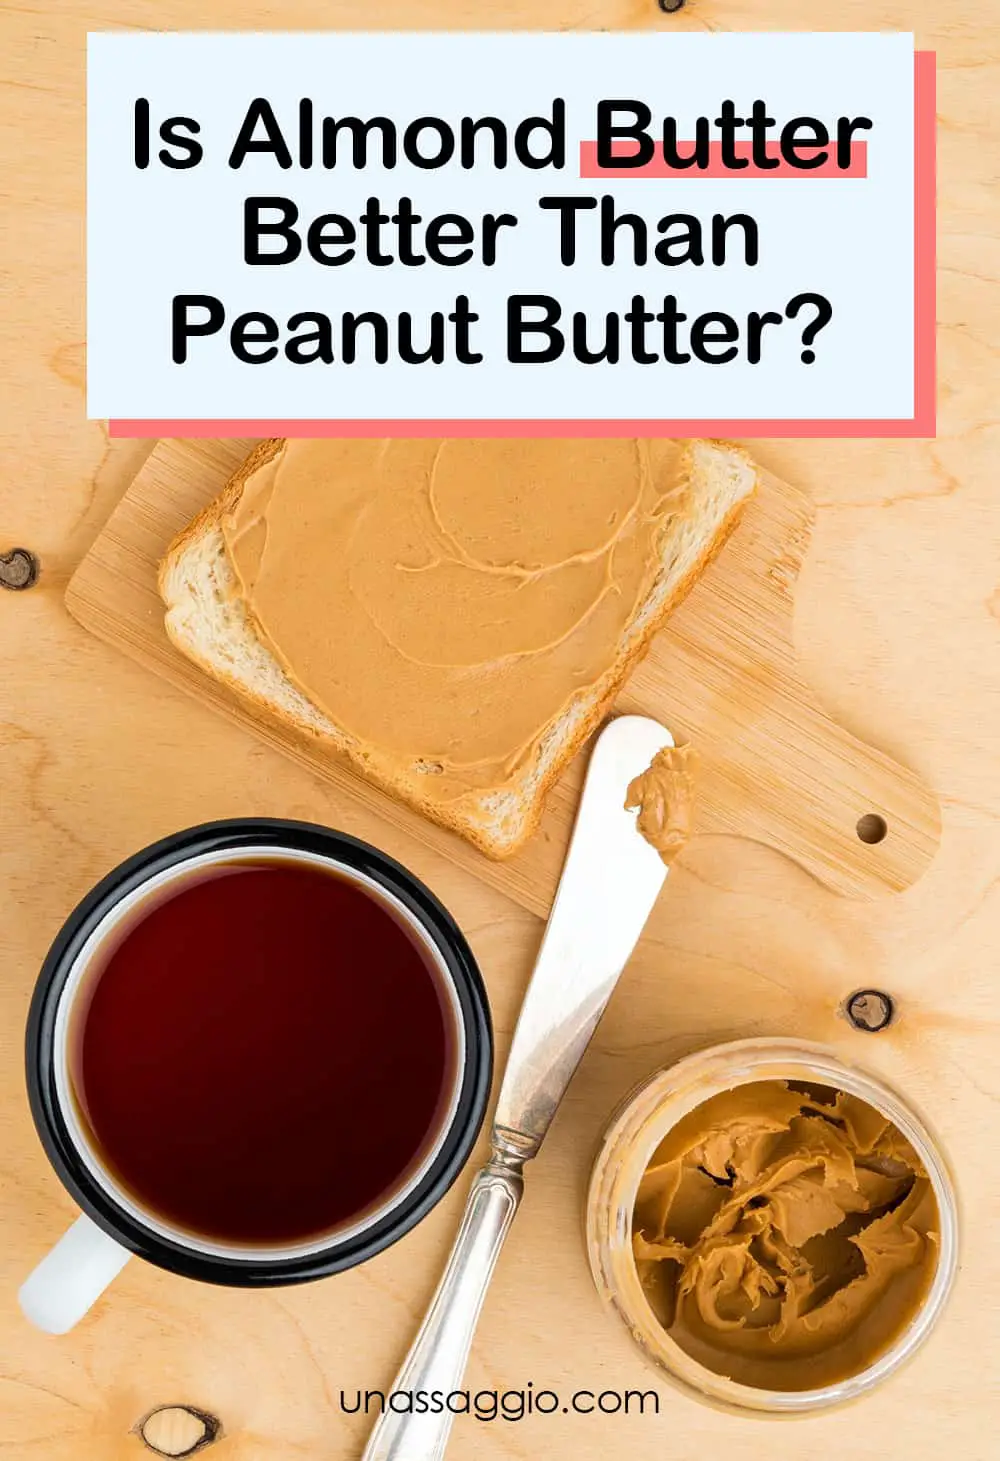 Is Almond Butter Better Than Peanut Butter?